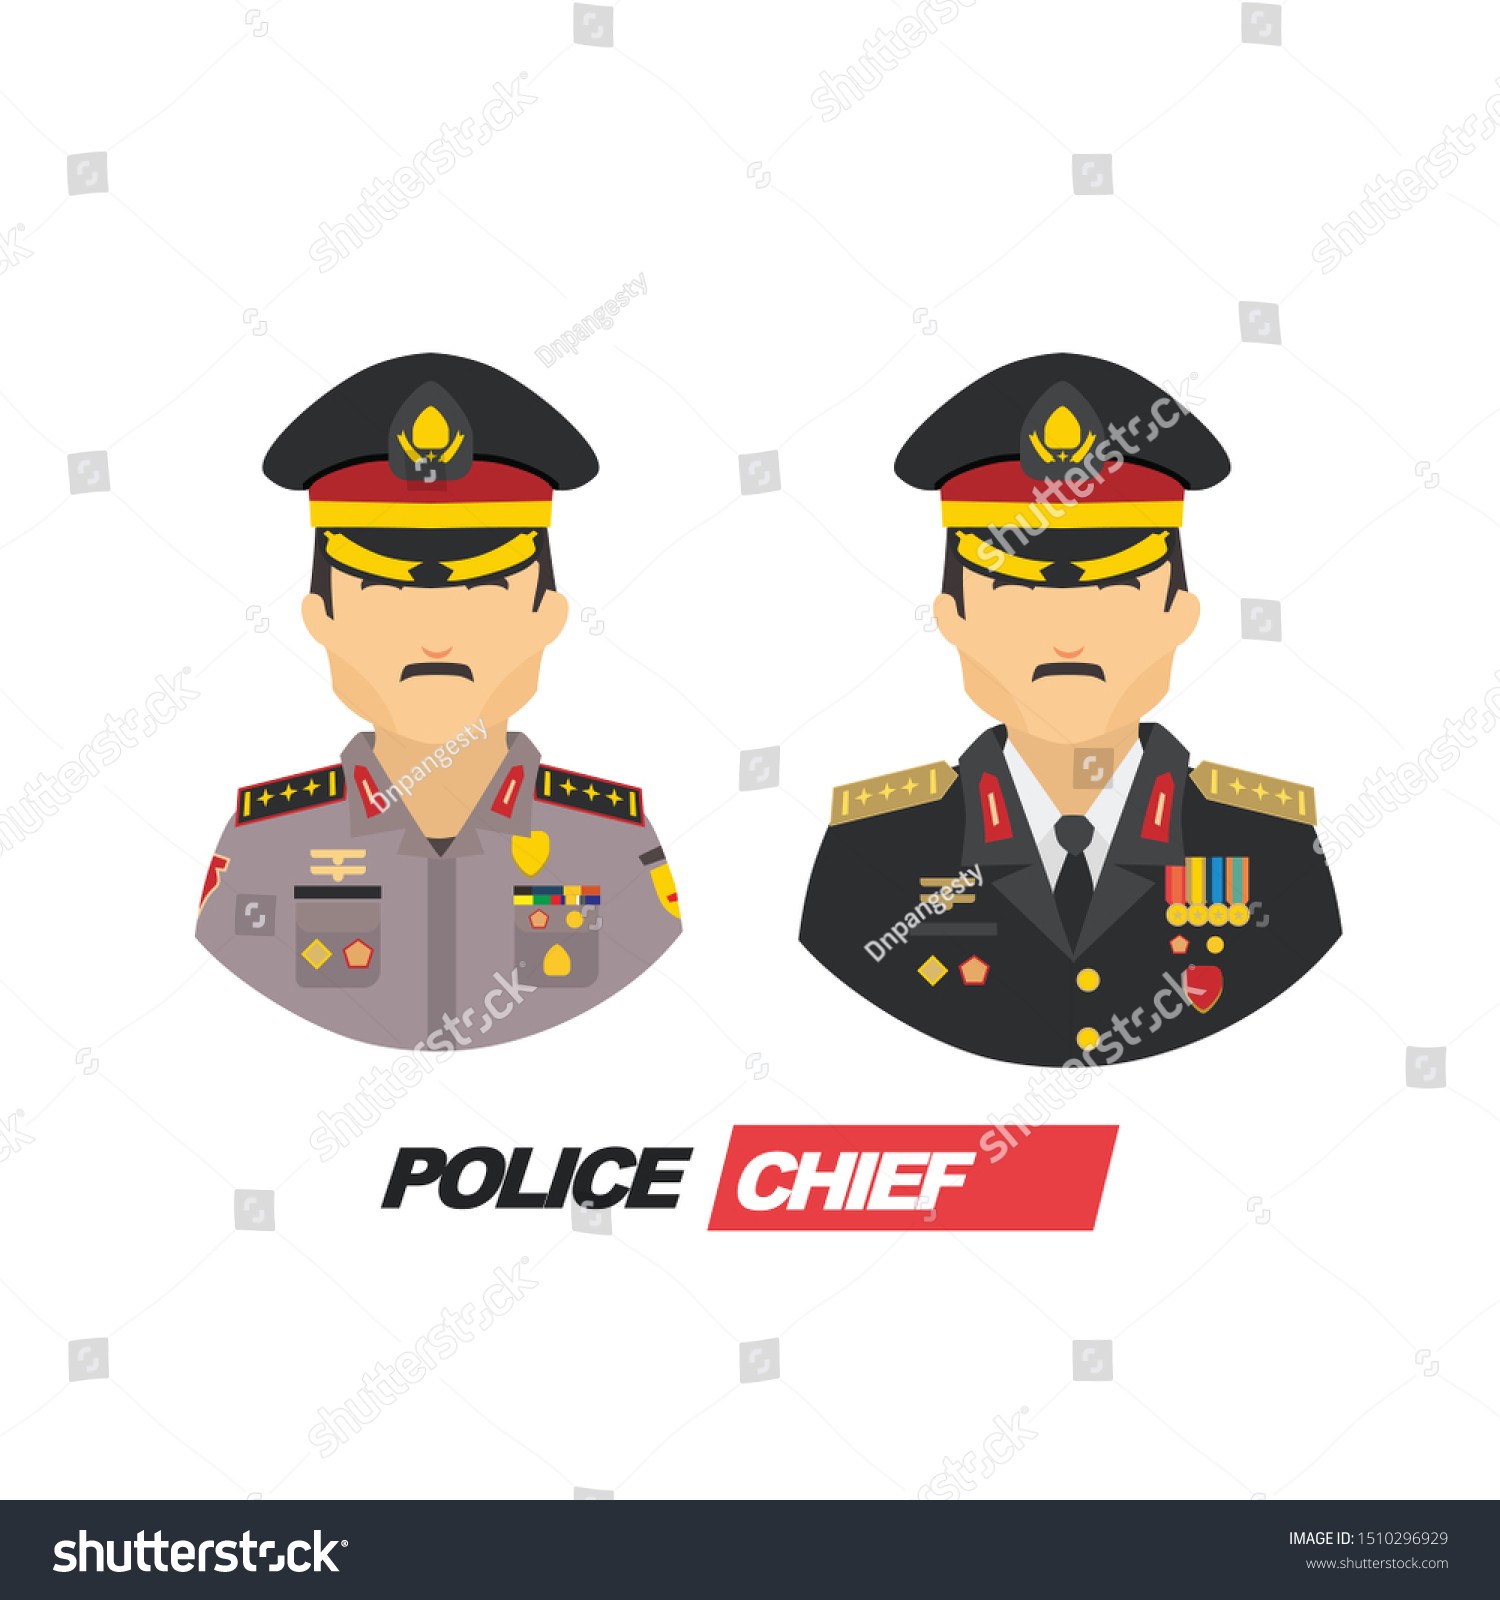 制服を着た2人の警察官と将校のイラストをセット のベクター画像素材 ロイヤリティフリー